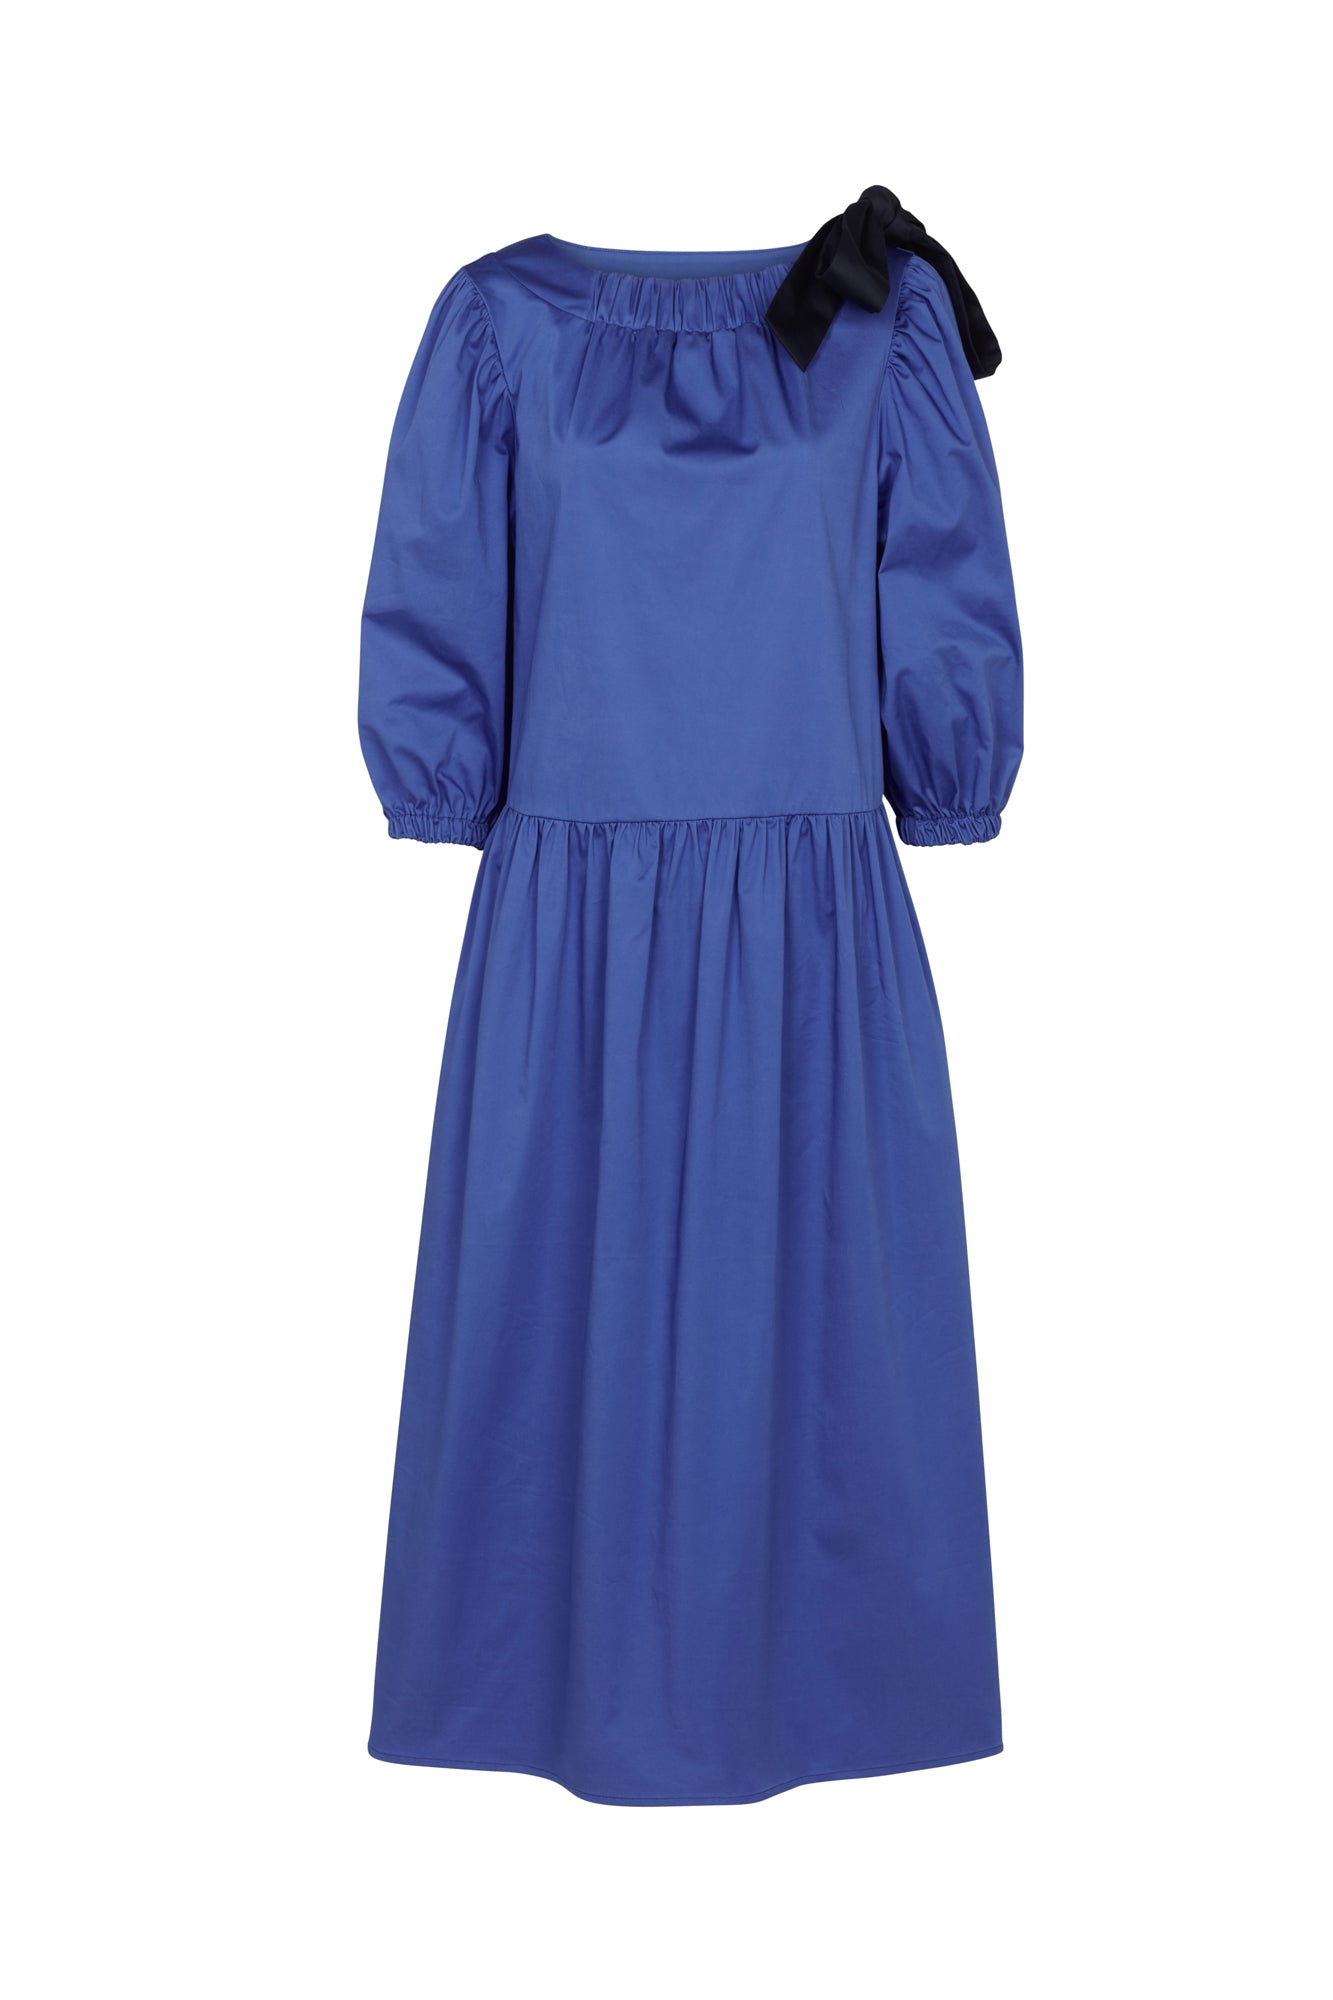 Women’s Hanna Dress Cobalt Blue Extra Small Mirla Beane